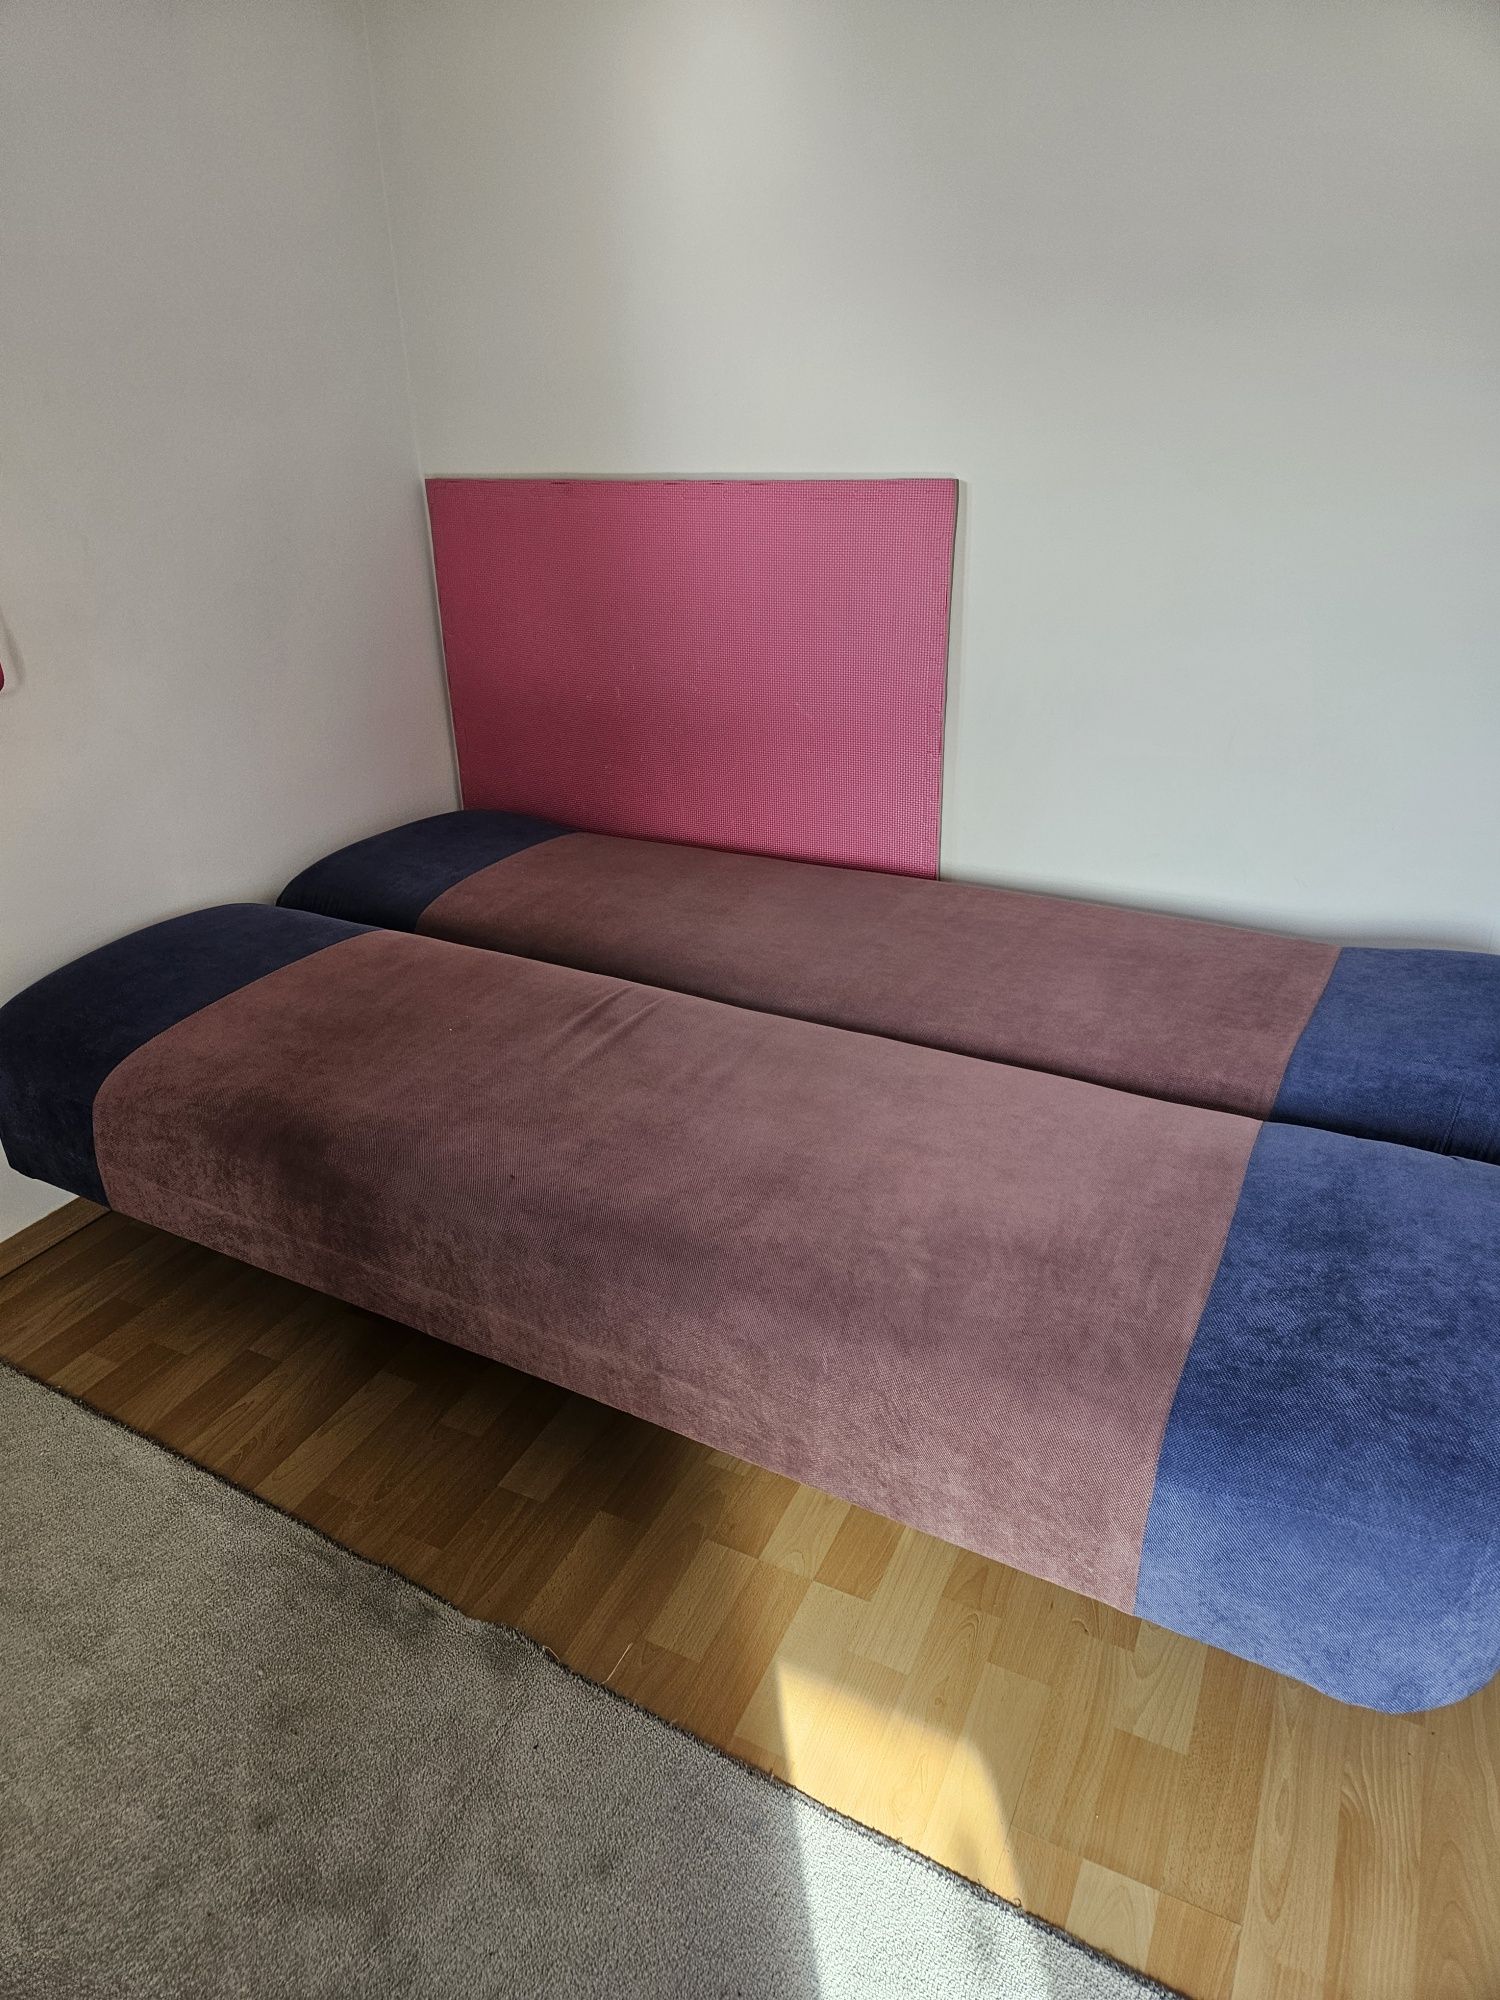 Łóżko rozkładane sofa składana wersalka różowo niebieska 115x190